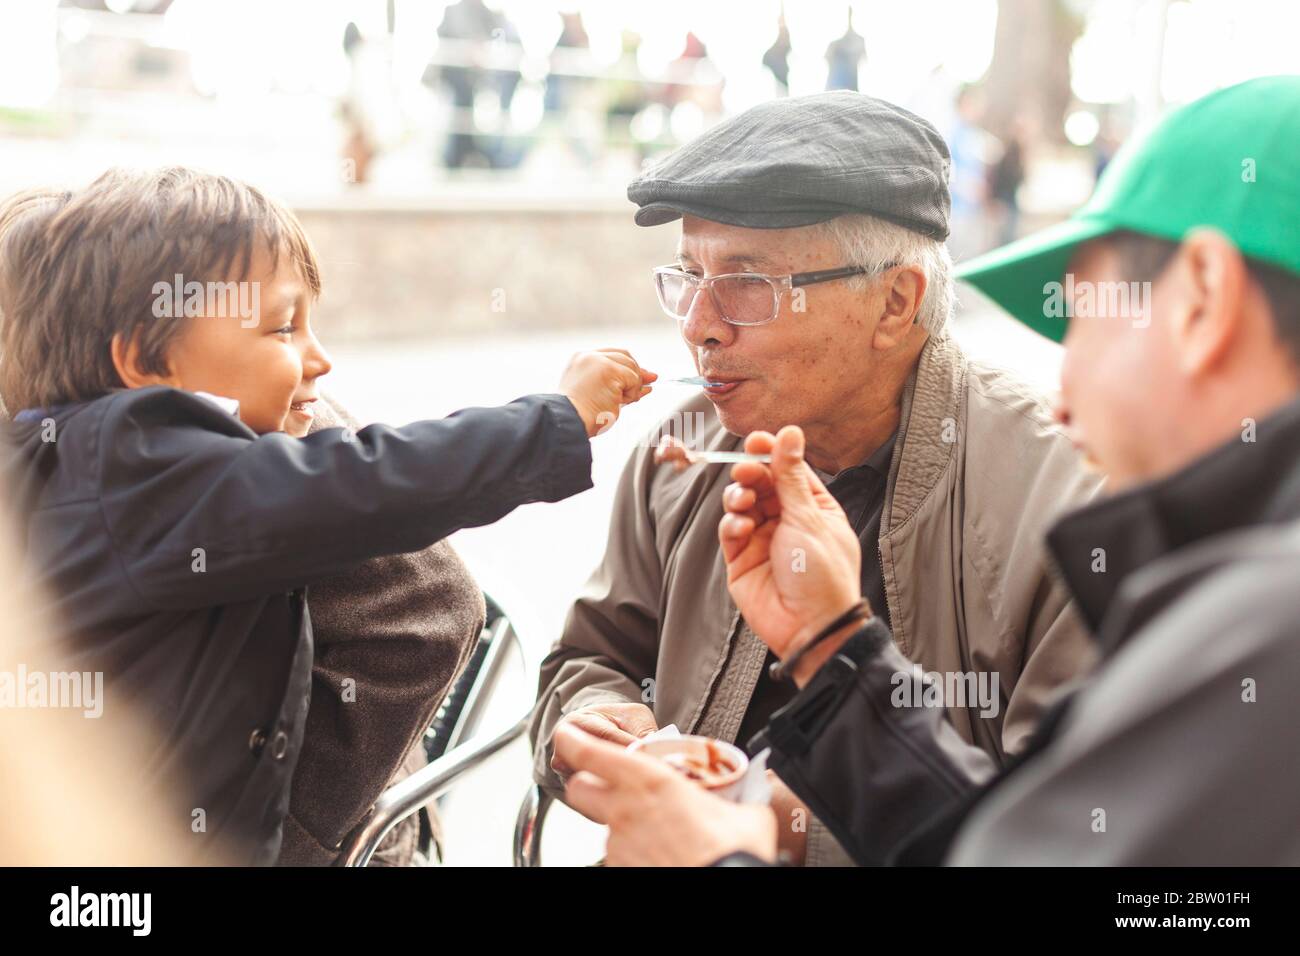 Grandson and granpa sharing ice cream Stock Photo